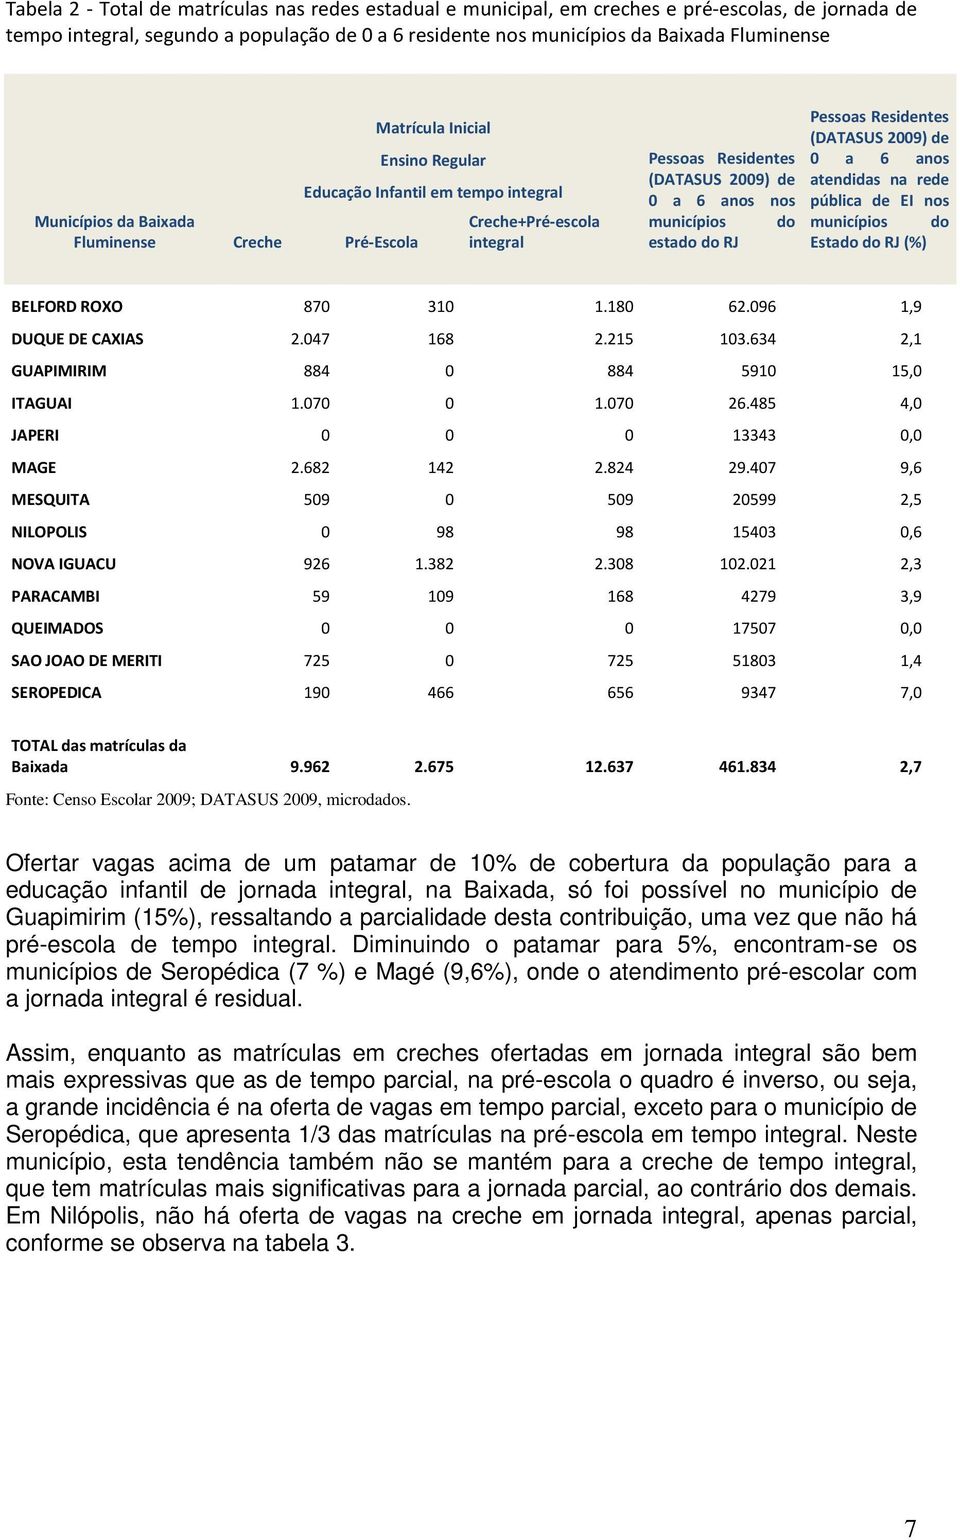 municípios do estado do RJ Pessoas Residentes (DATASUS 2009) de 0 a 6 anos atendidas na rede pública de EI nos municípios do Estado do RJ (%) BELFORD ROXO 870 310 1.180 62.096 1,9 DUQUE DE CAXIAS 2.